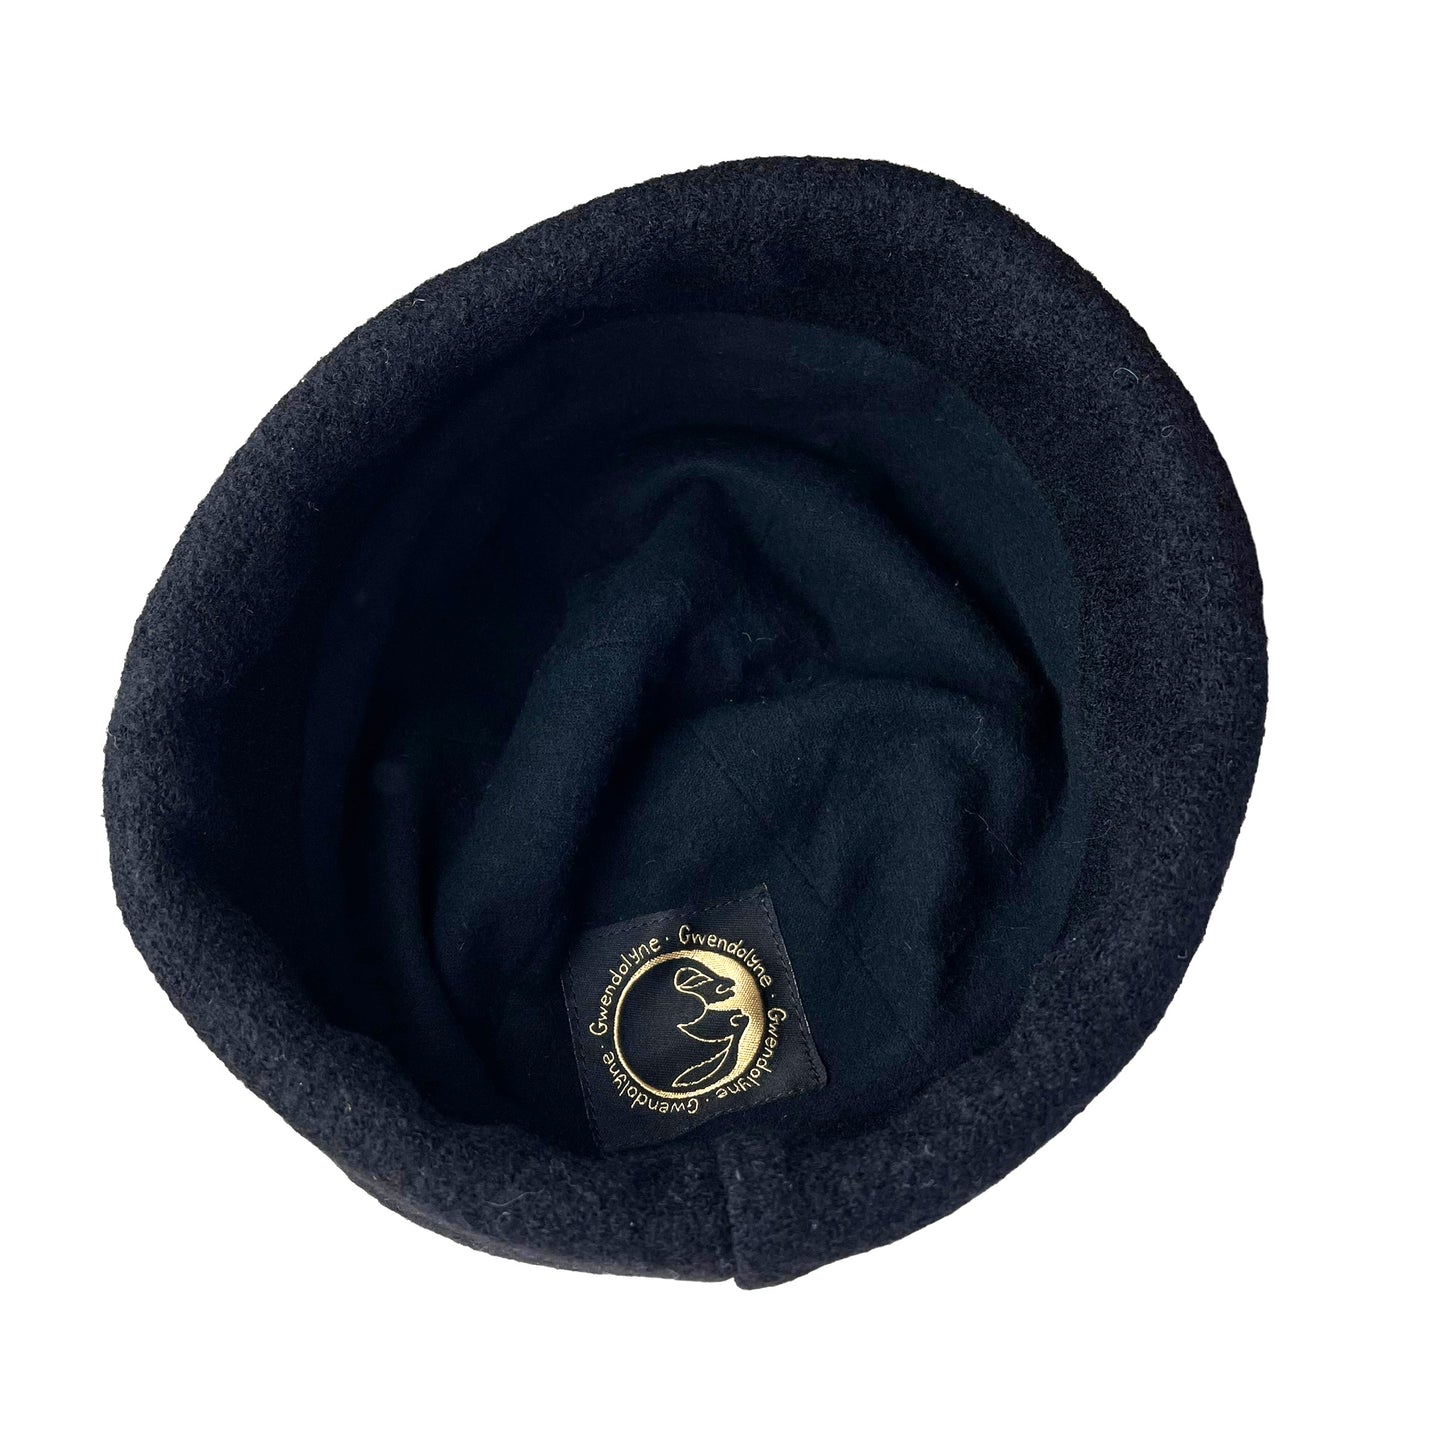 Beanie Wool Cap Slouchy Toque Small Royal Blue Black